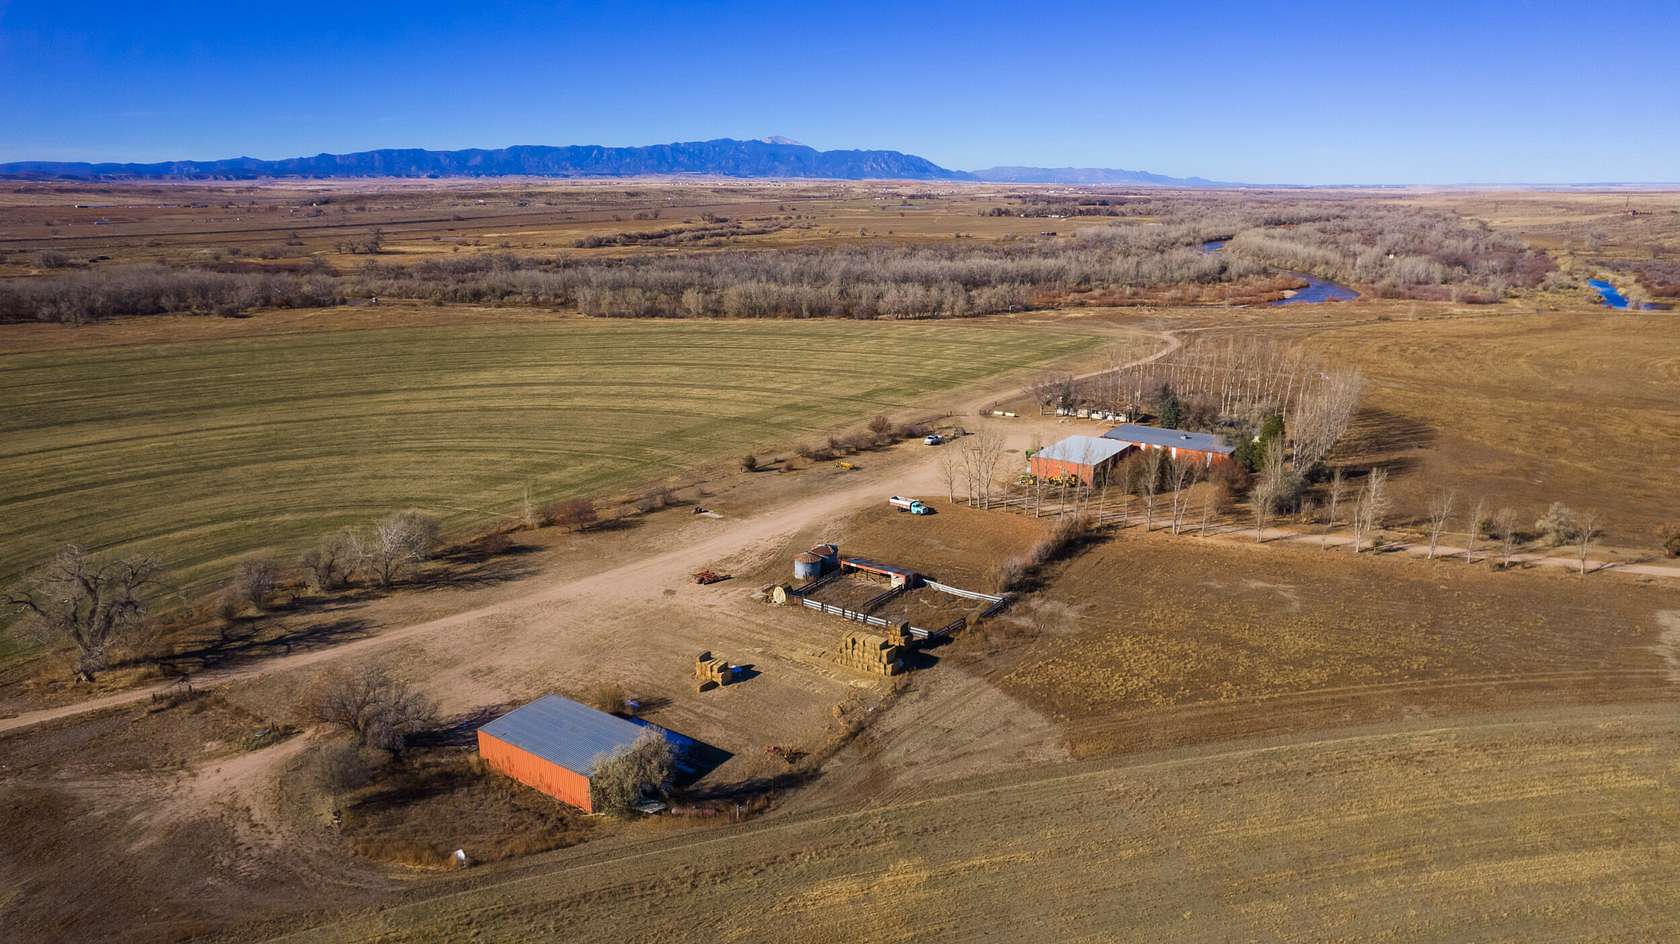 985 Acres of Land for Sale in Pueblo, Colorado